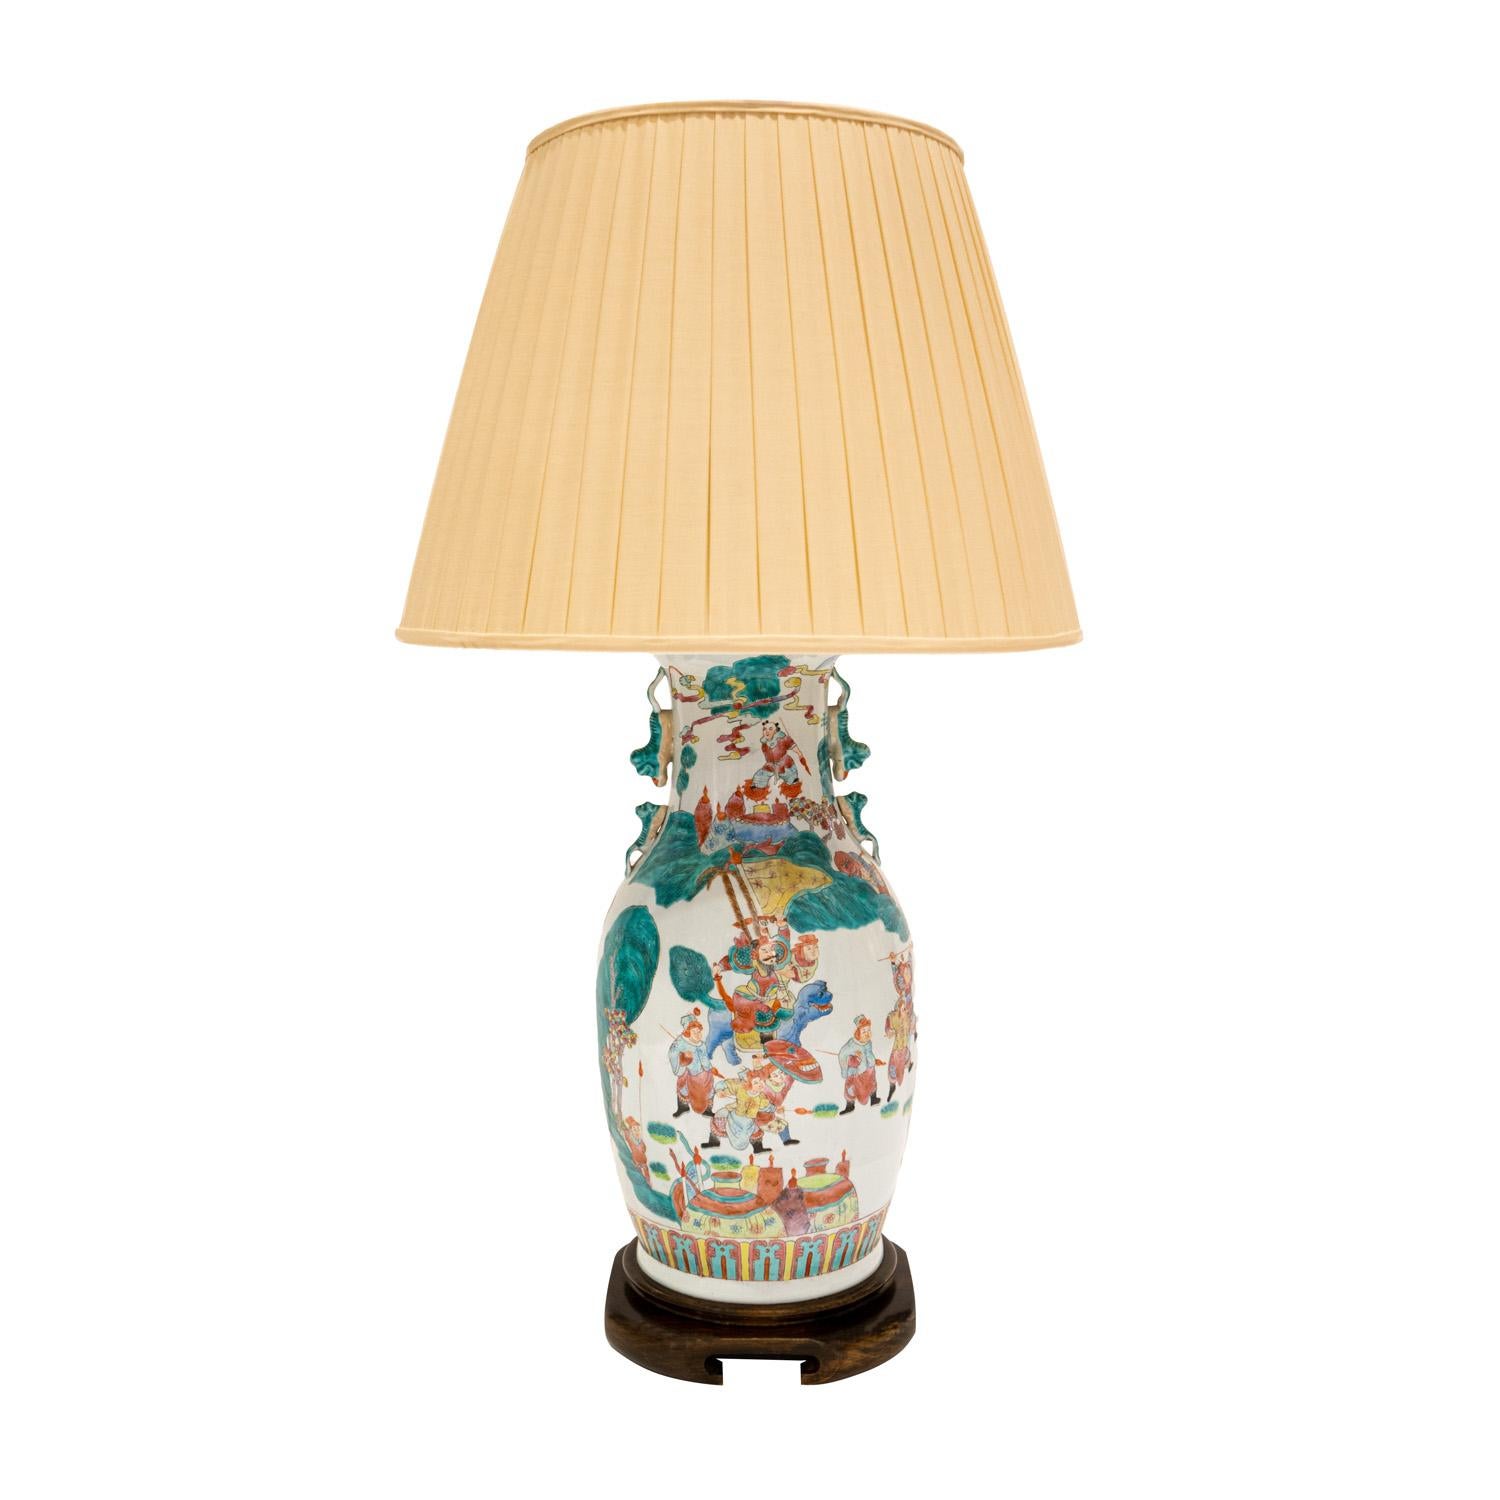 Exceptionnelle lampe de table en porcelaine fabriquée en studio avec un décor figuratif et géométrique peint à la main sur une base en bois sculpté, Chine, années 1960. La fabrication de cette lampe est superbe.  Cette lampe a 3 ampoules - 1 est